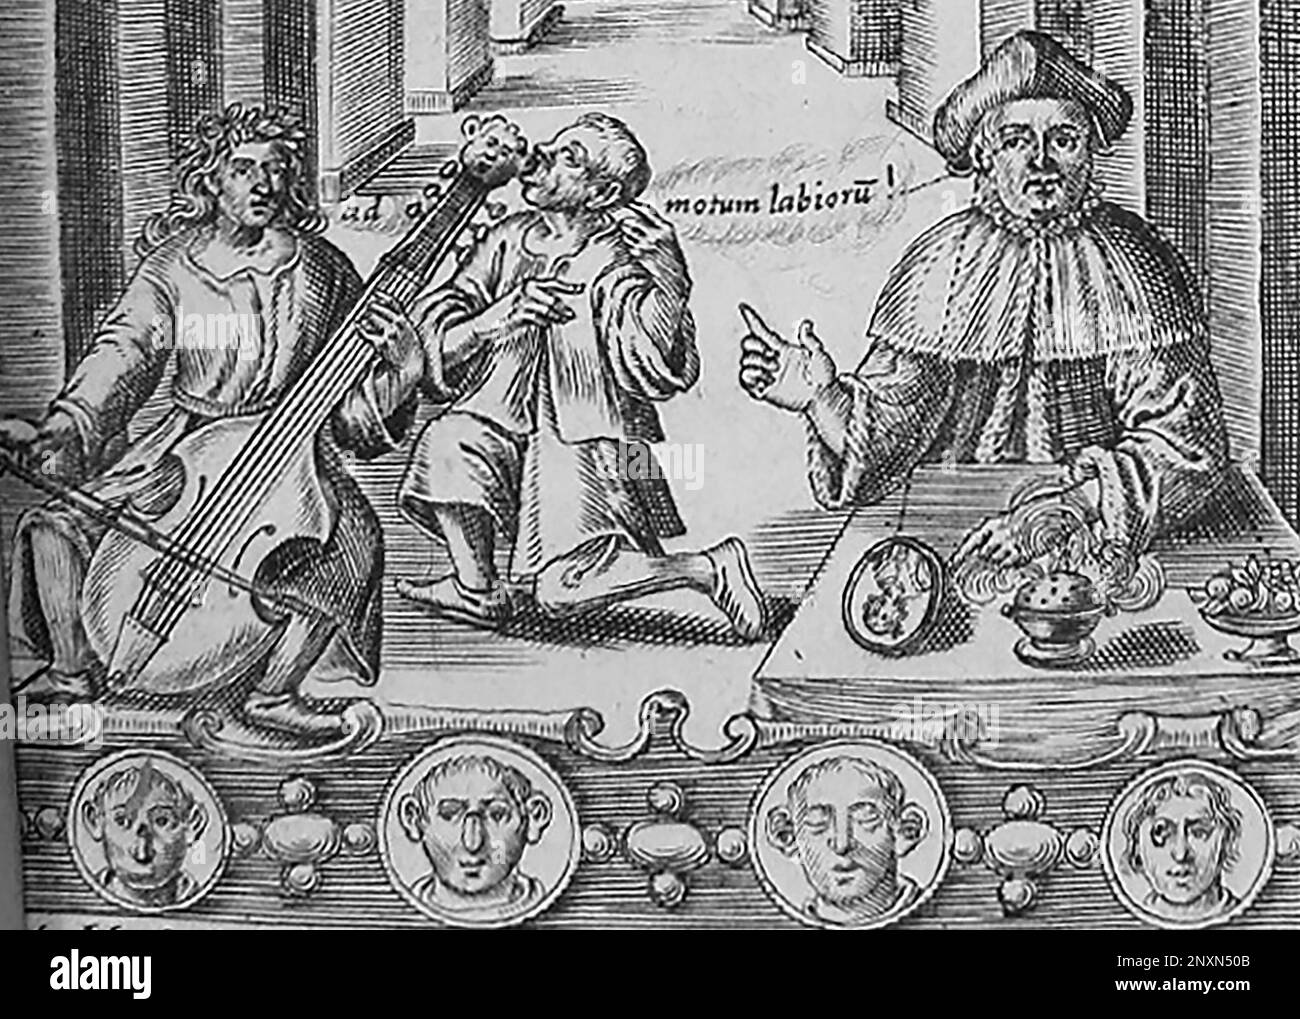 Particolare del frontespizio del Filocofo di John Bulwer, pubblicato nel 1648, che mostra un uomo sordi che ascolta musica per conduzione ossea attraverso i denti. John Bulwer (1606-1656) è stato un medico e filosofo inglese che ha scritto cinque opere per esplorare il corpo e la comunicazione umana, tra cui Chirologia (1644) e Filocofo (1648). È stato il primo in Inghilterra a proporre l'educazione dei sordi. Le forme di mano descritte in Chirologia sono ancora utilizzate nel linguaggio dei segni britannico. Foto Stock